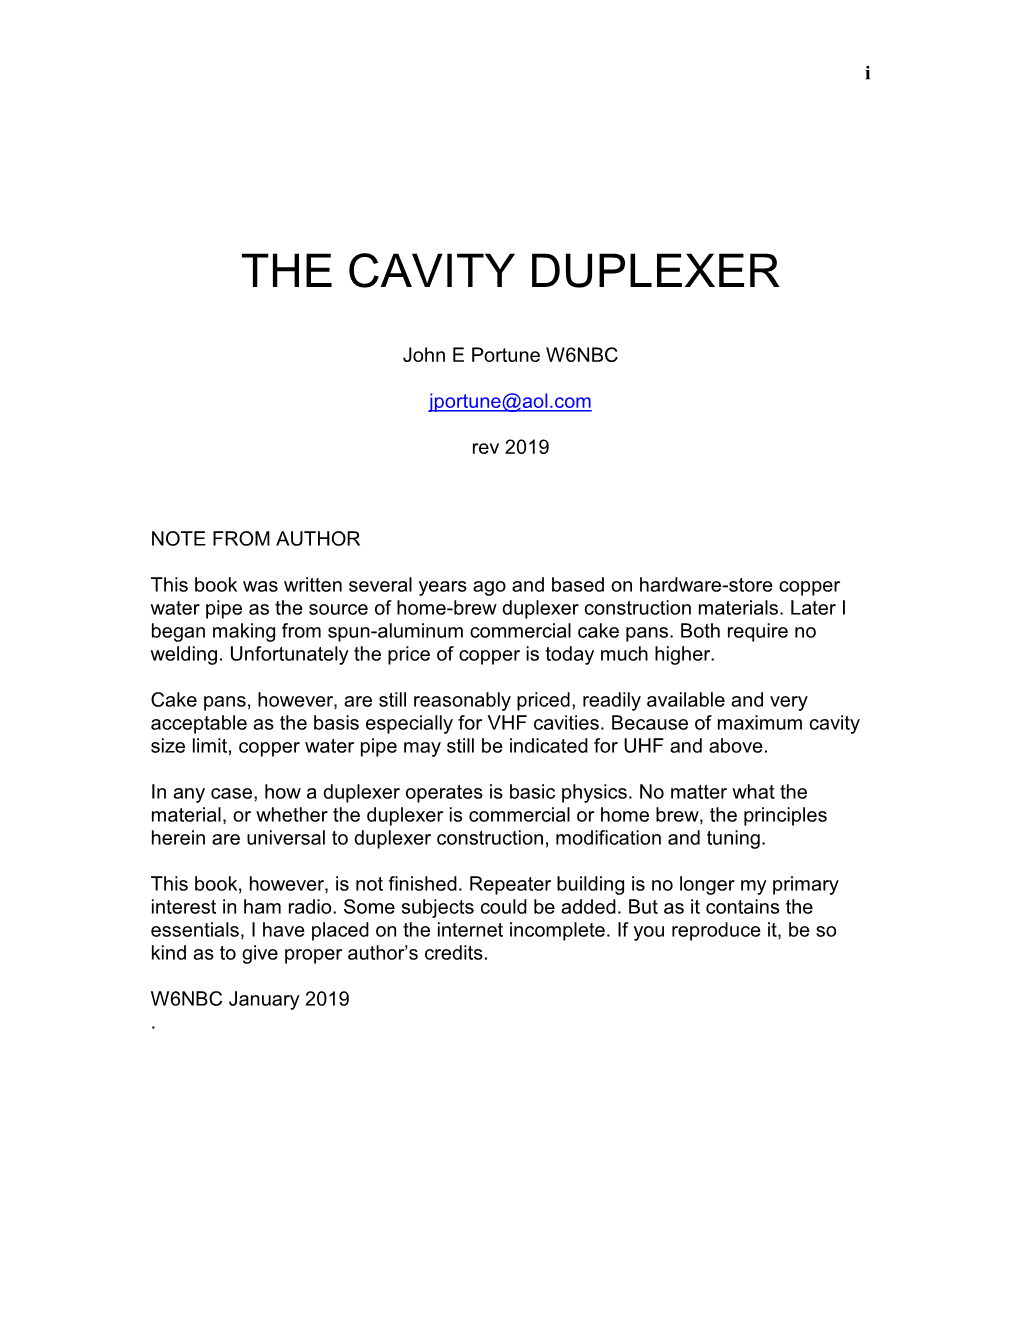 Understanding the Cavity Duplexer